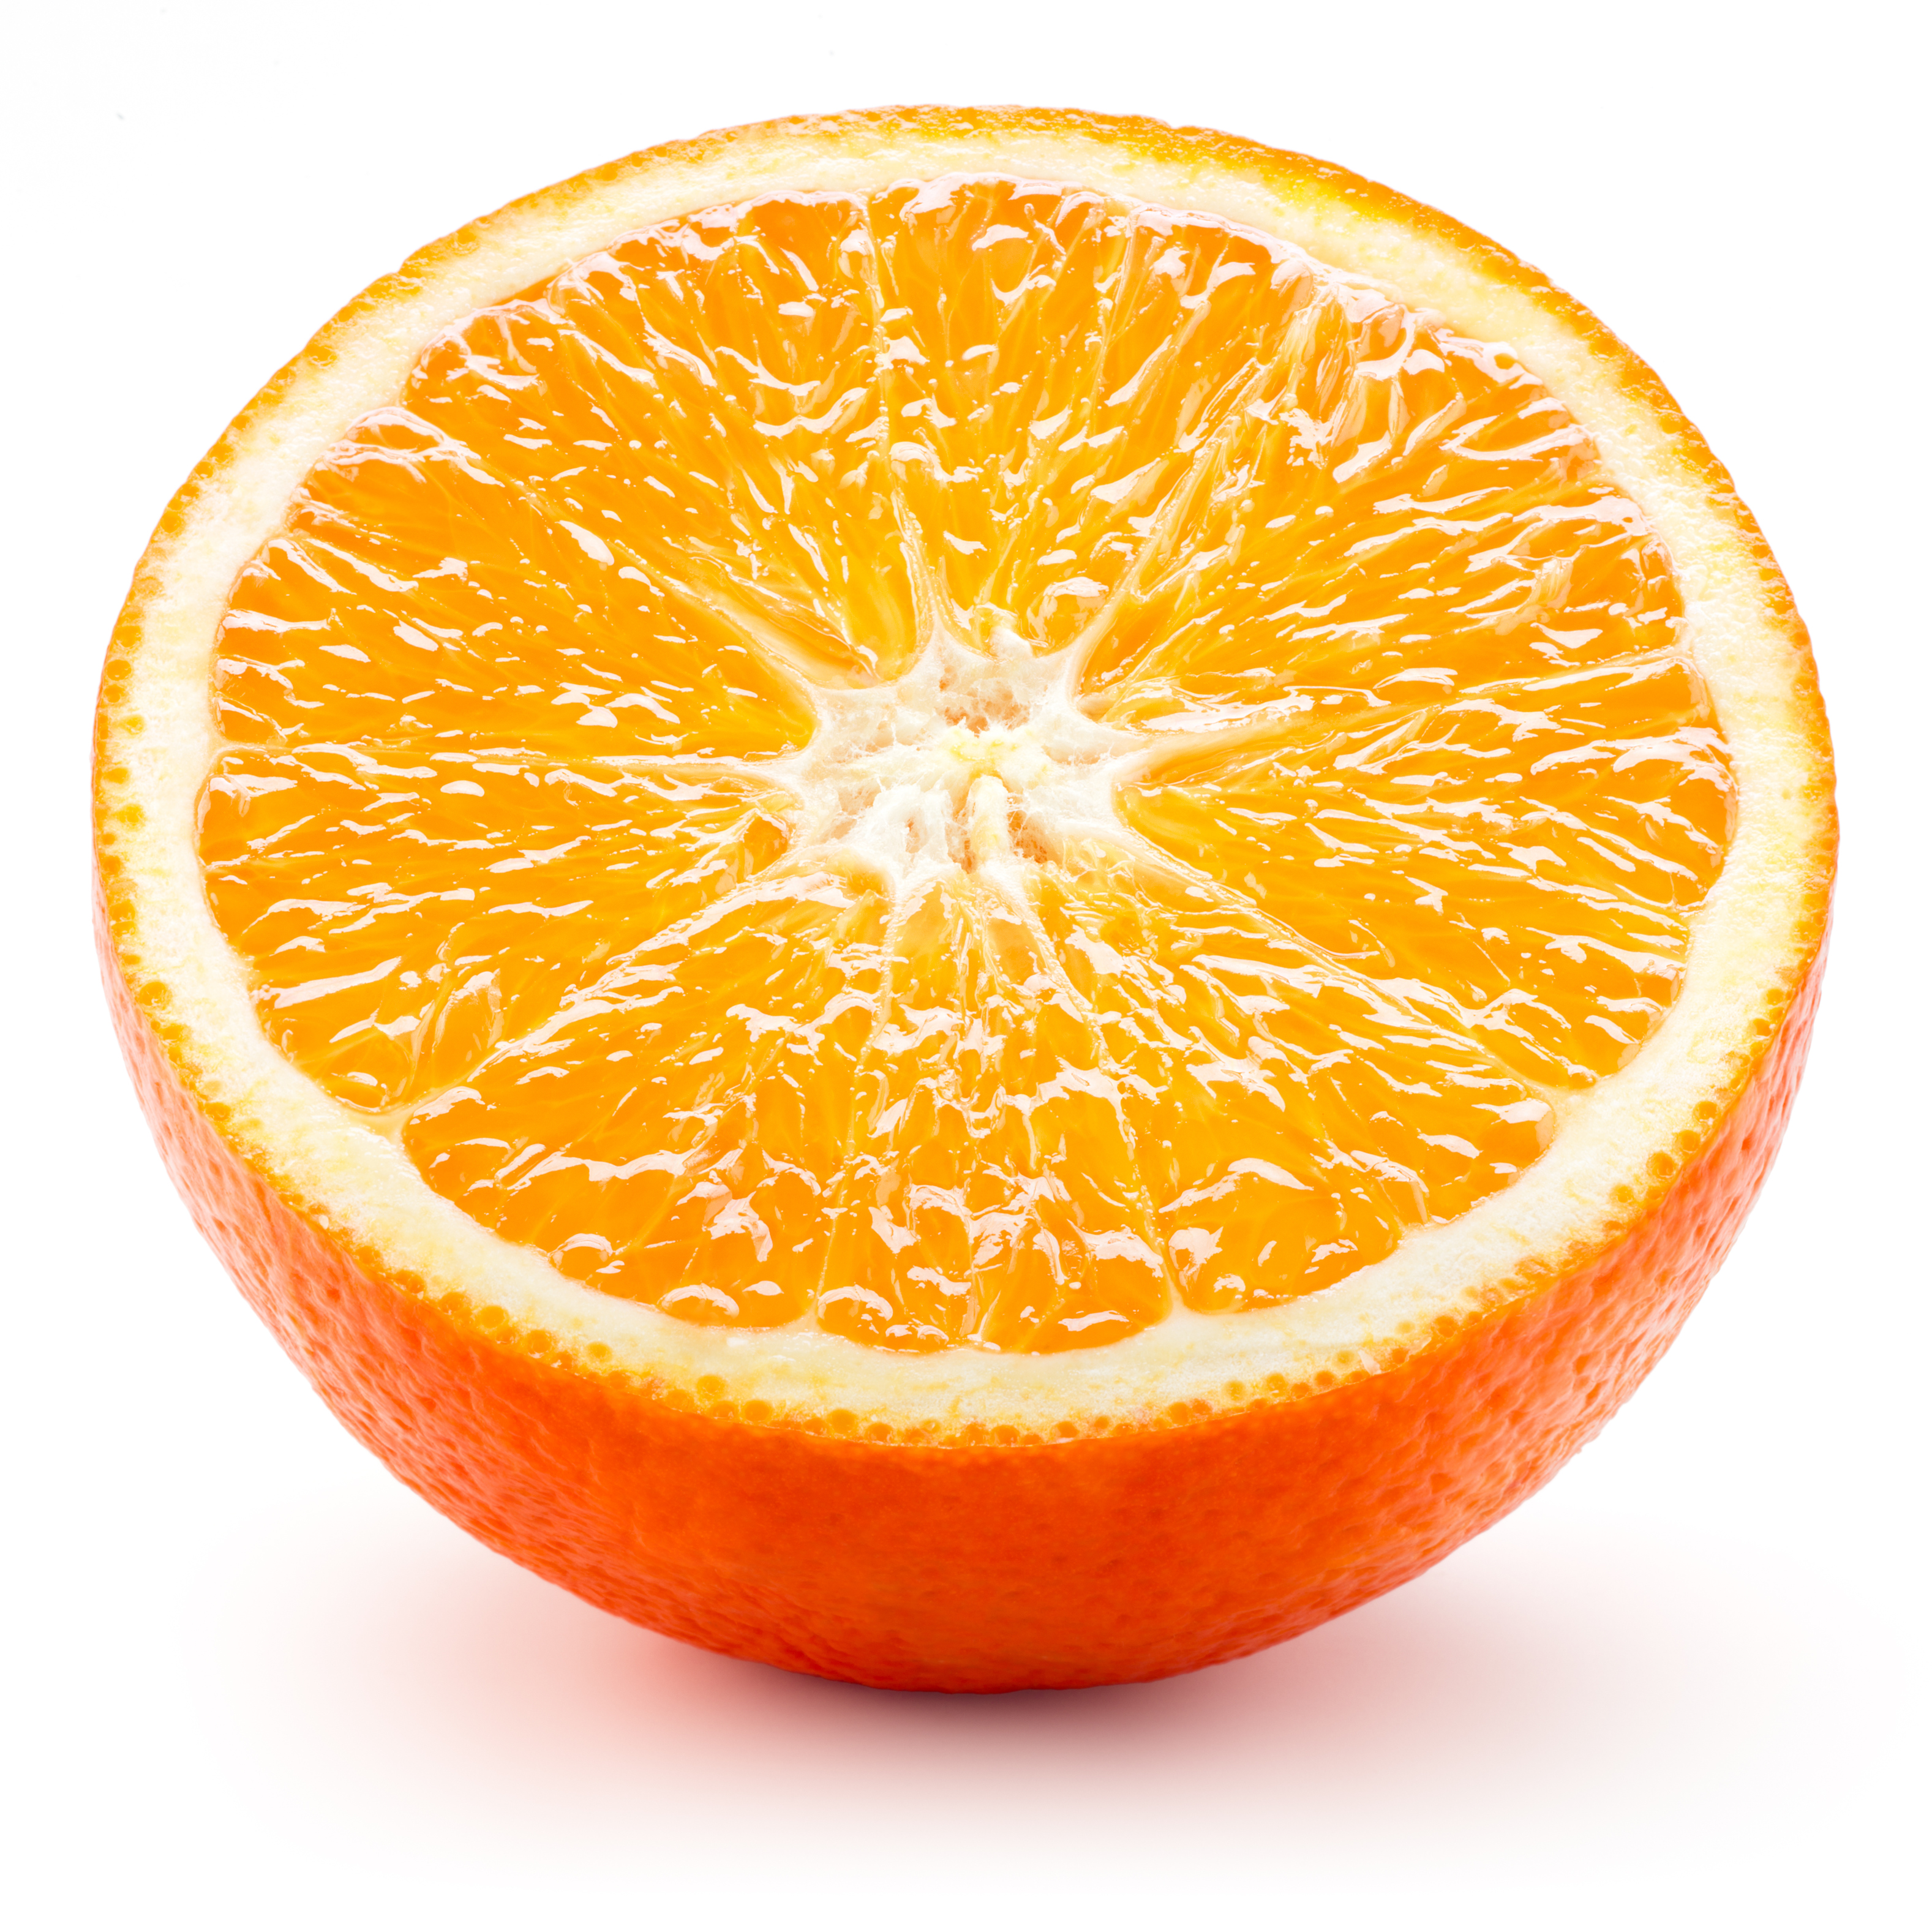 In season September: Oranges | Healthy Food Guide